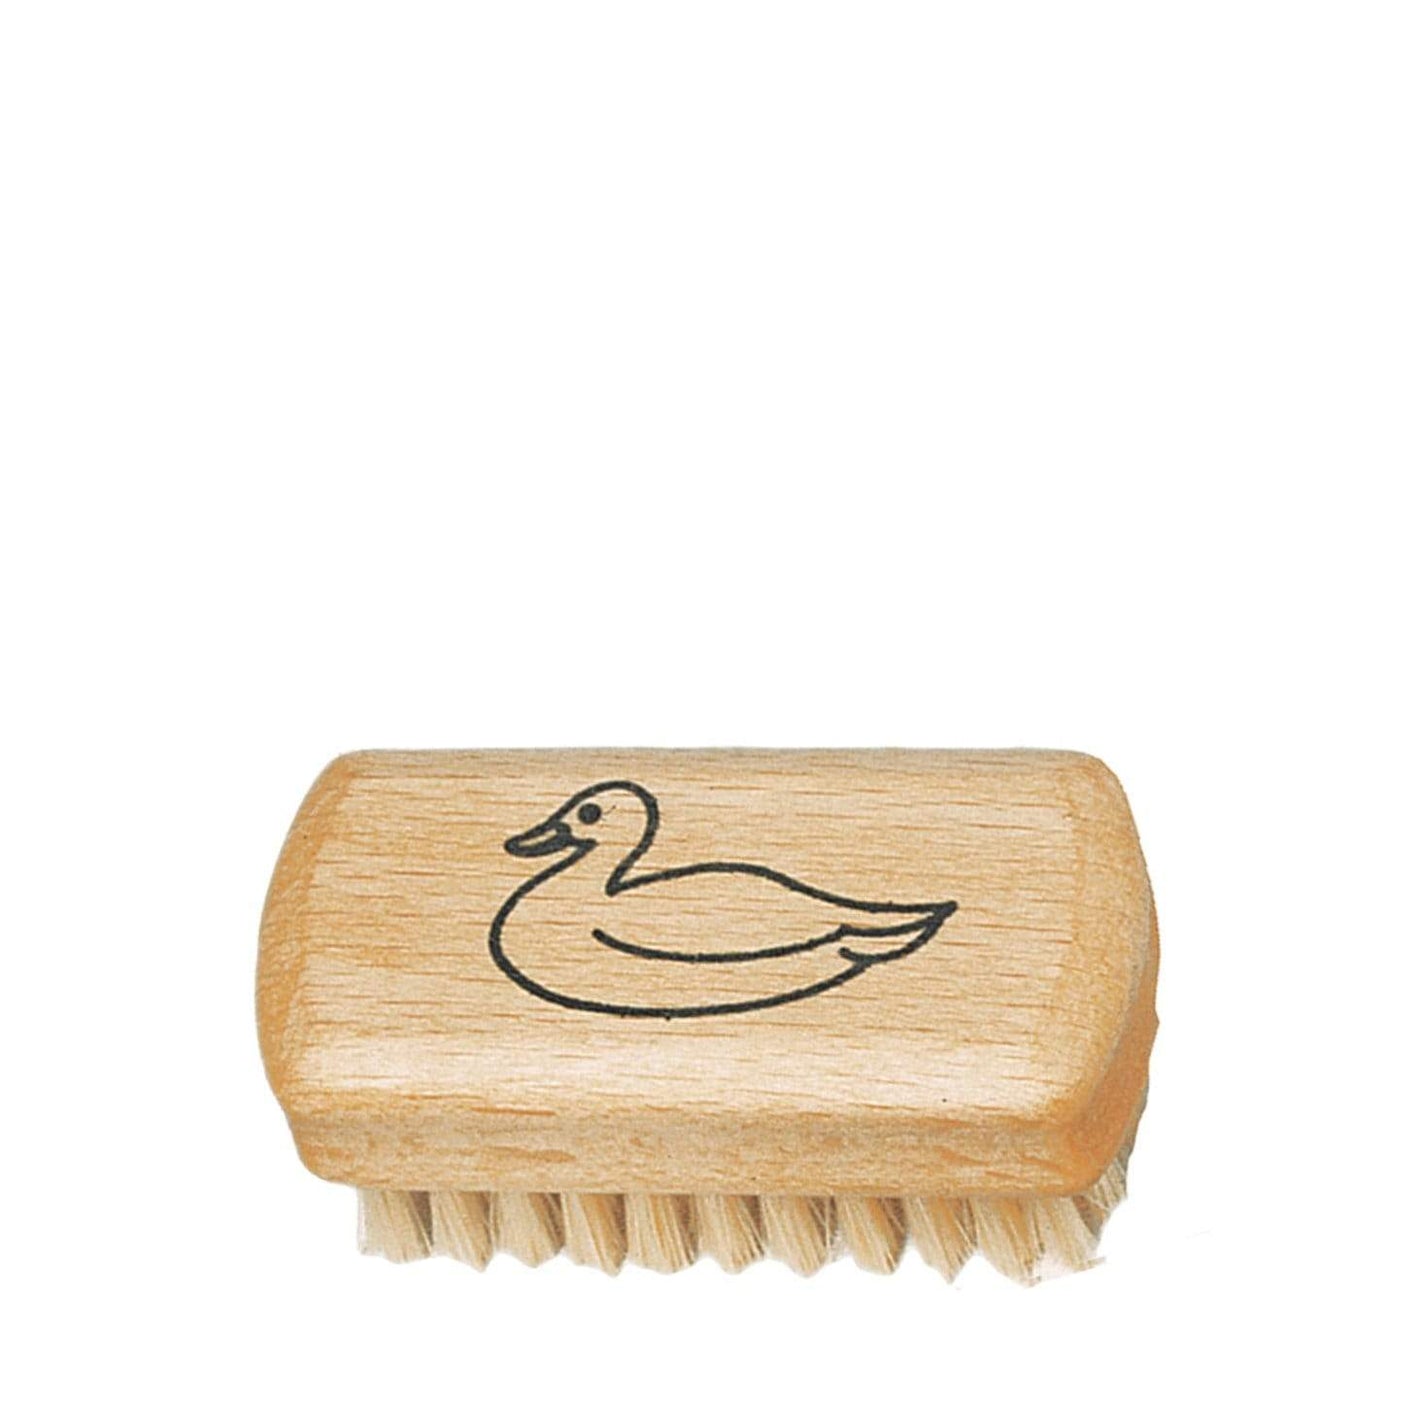 Redecker 'Duck' Nail Brush